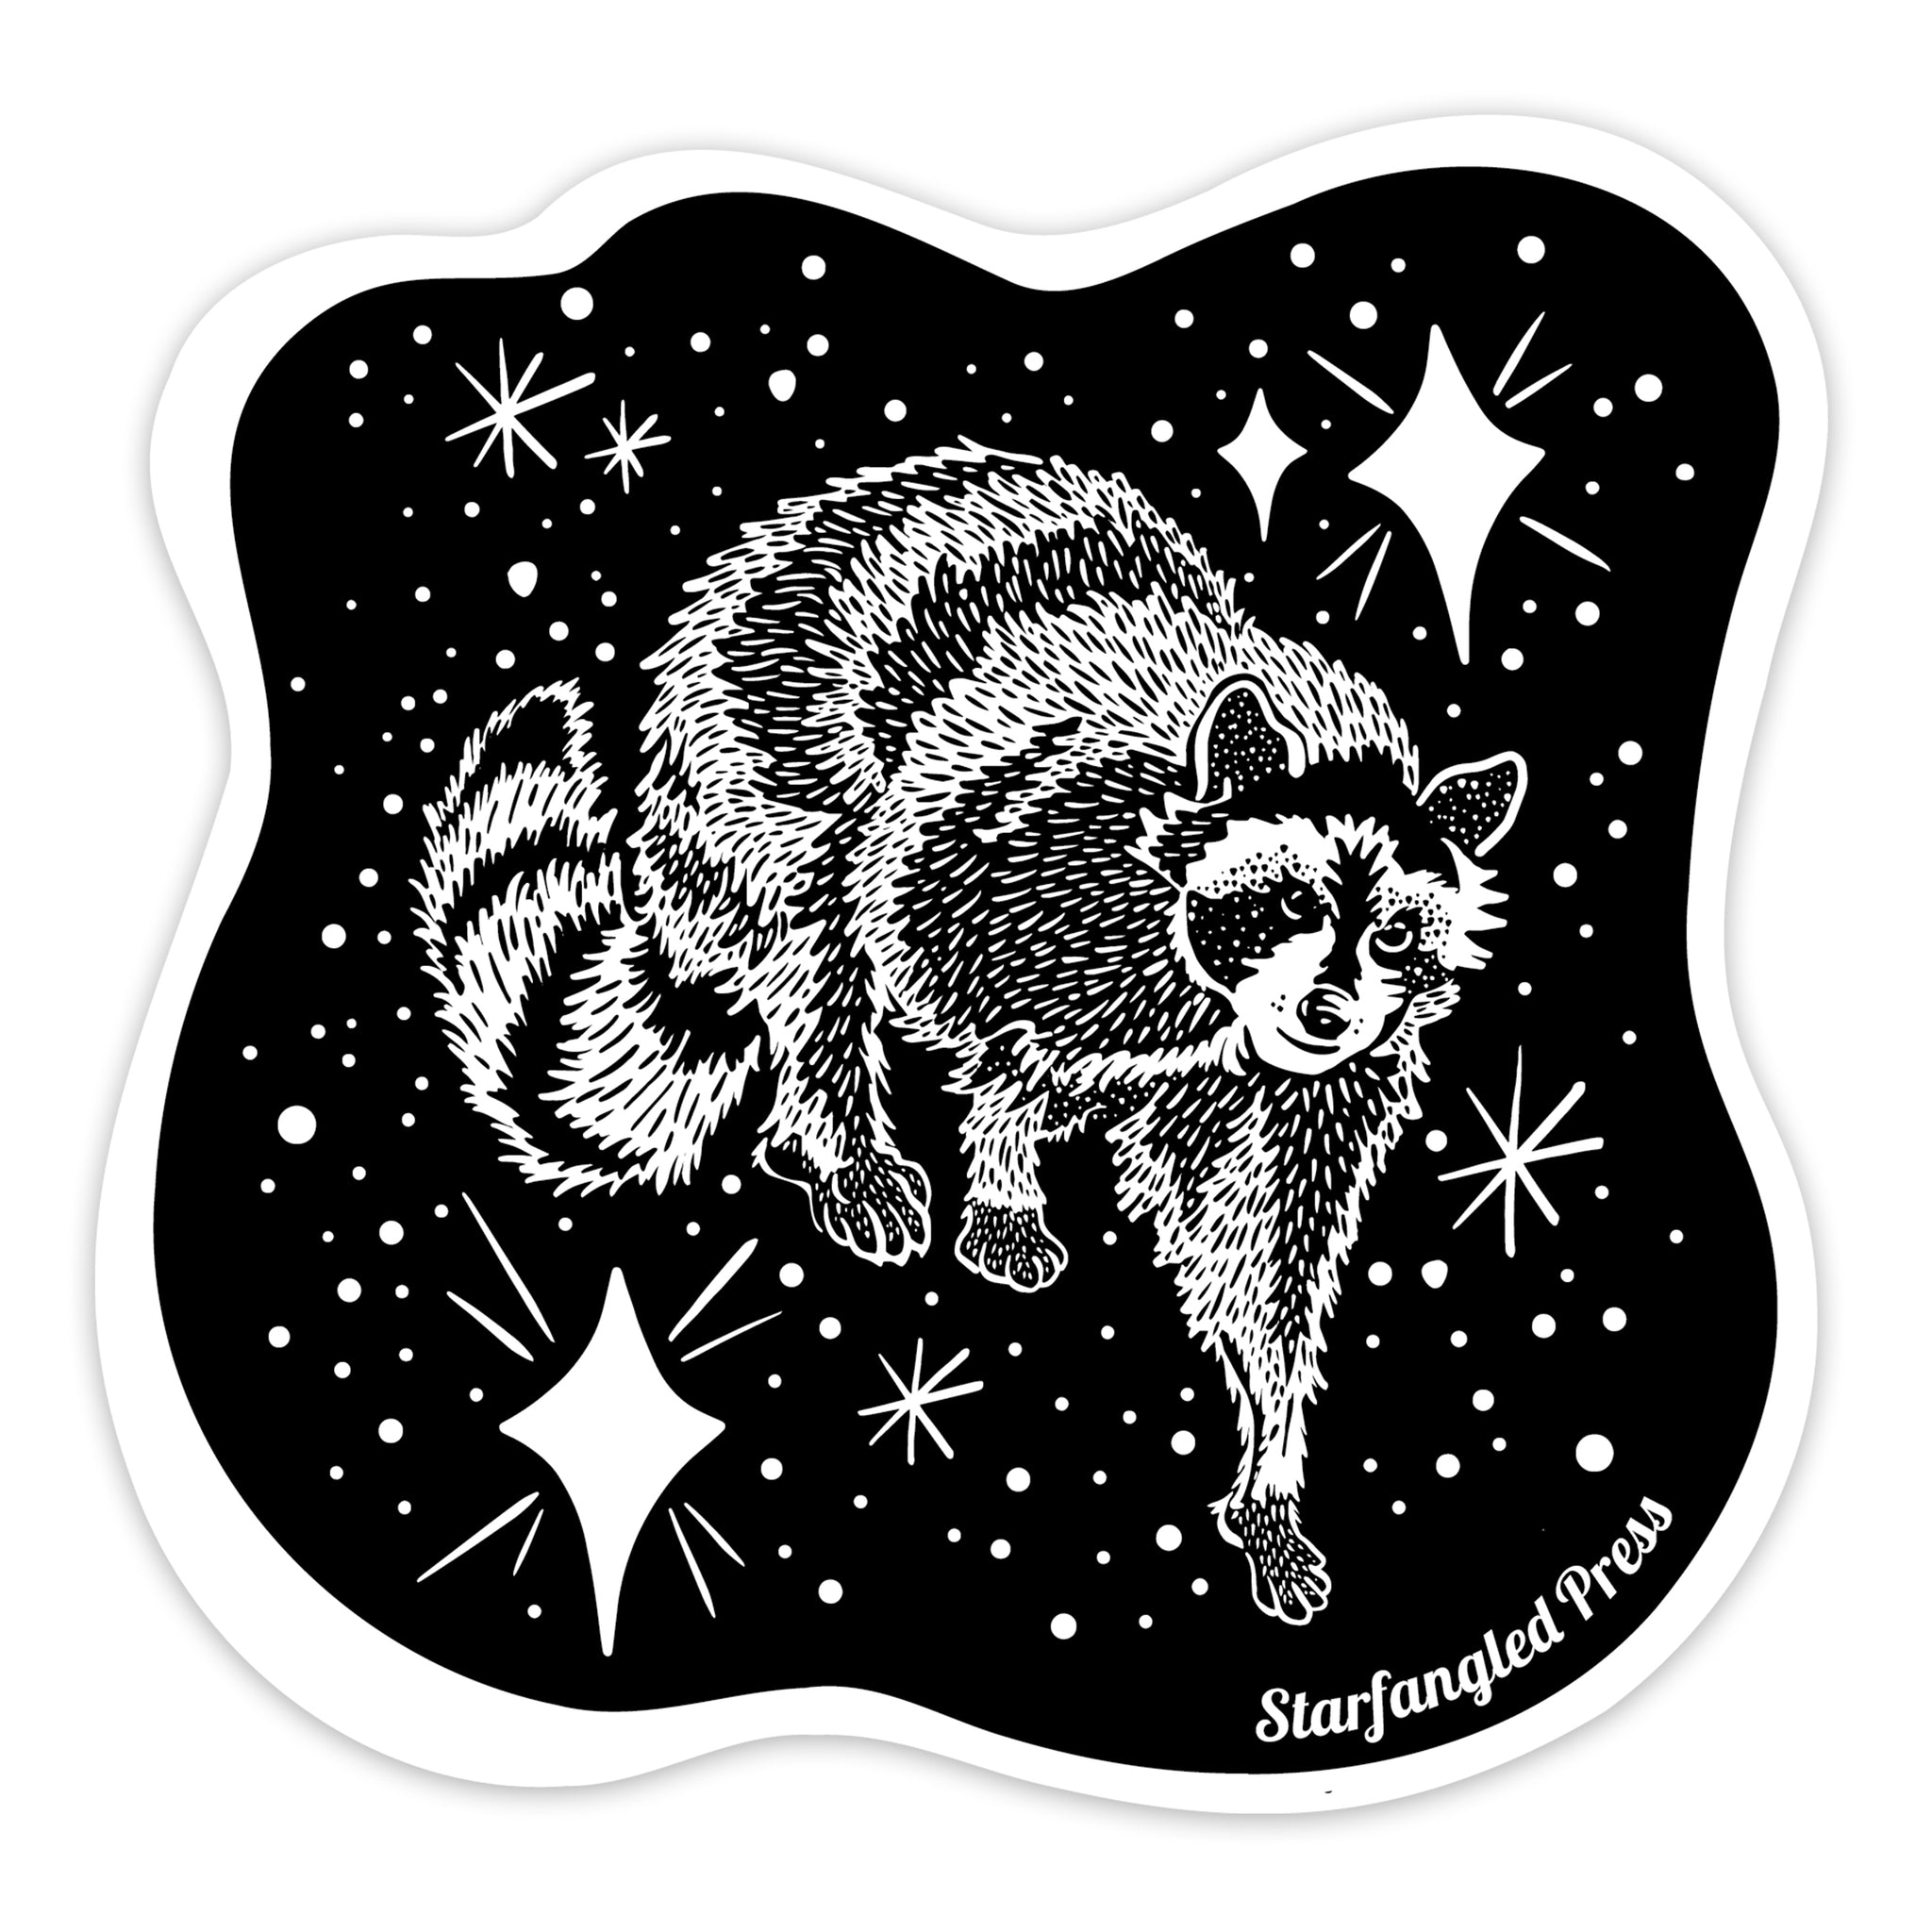 Cosmic Raccoon 3" Vinyl Sticker